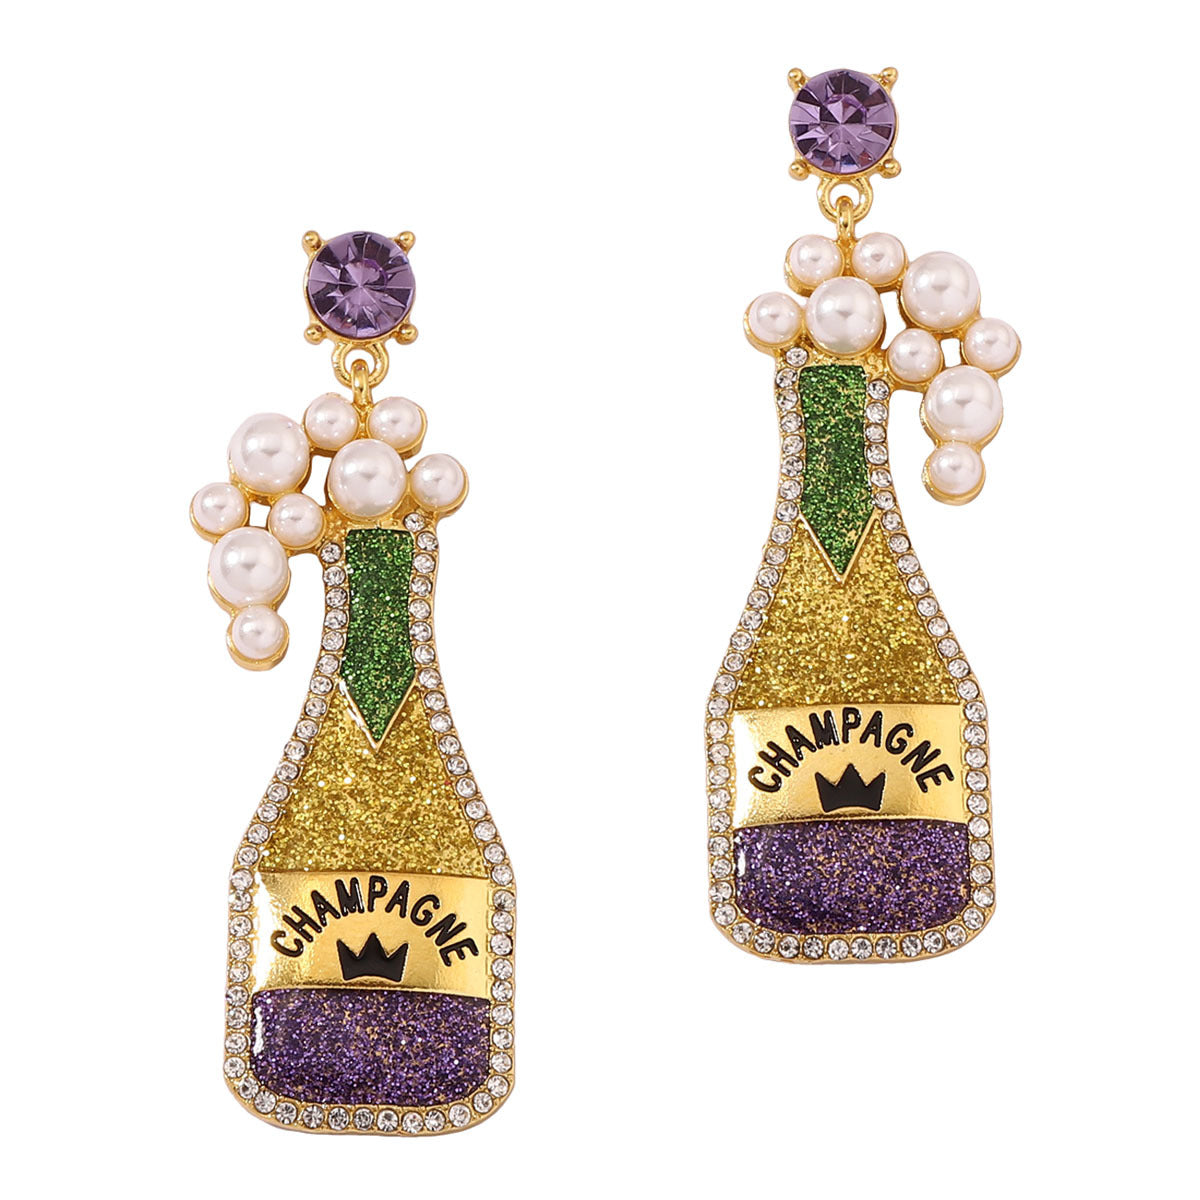 Cute beer bottle earrings within purple